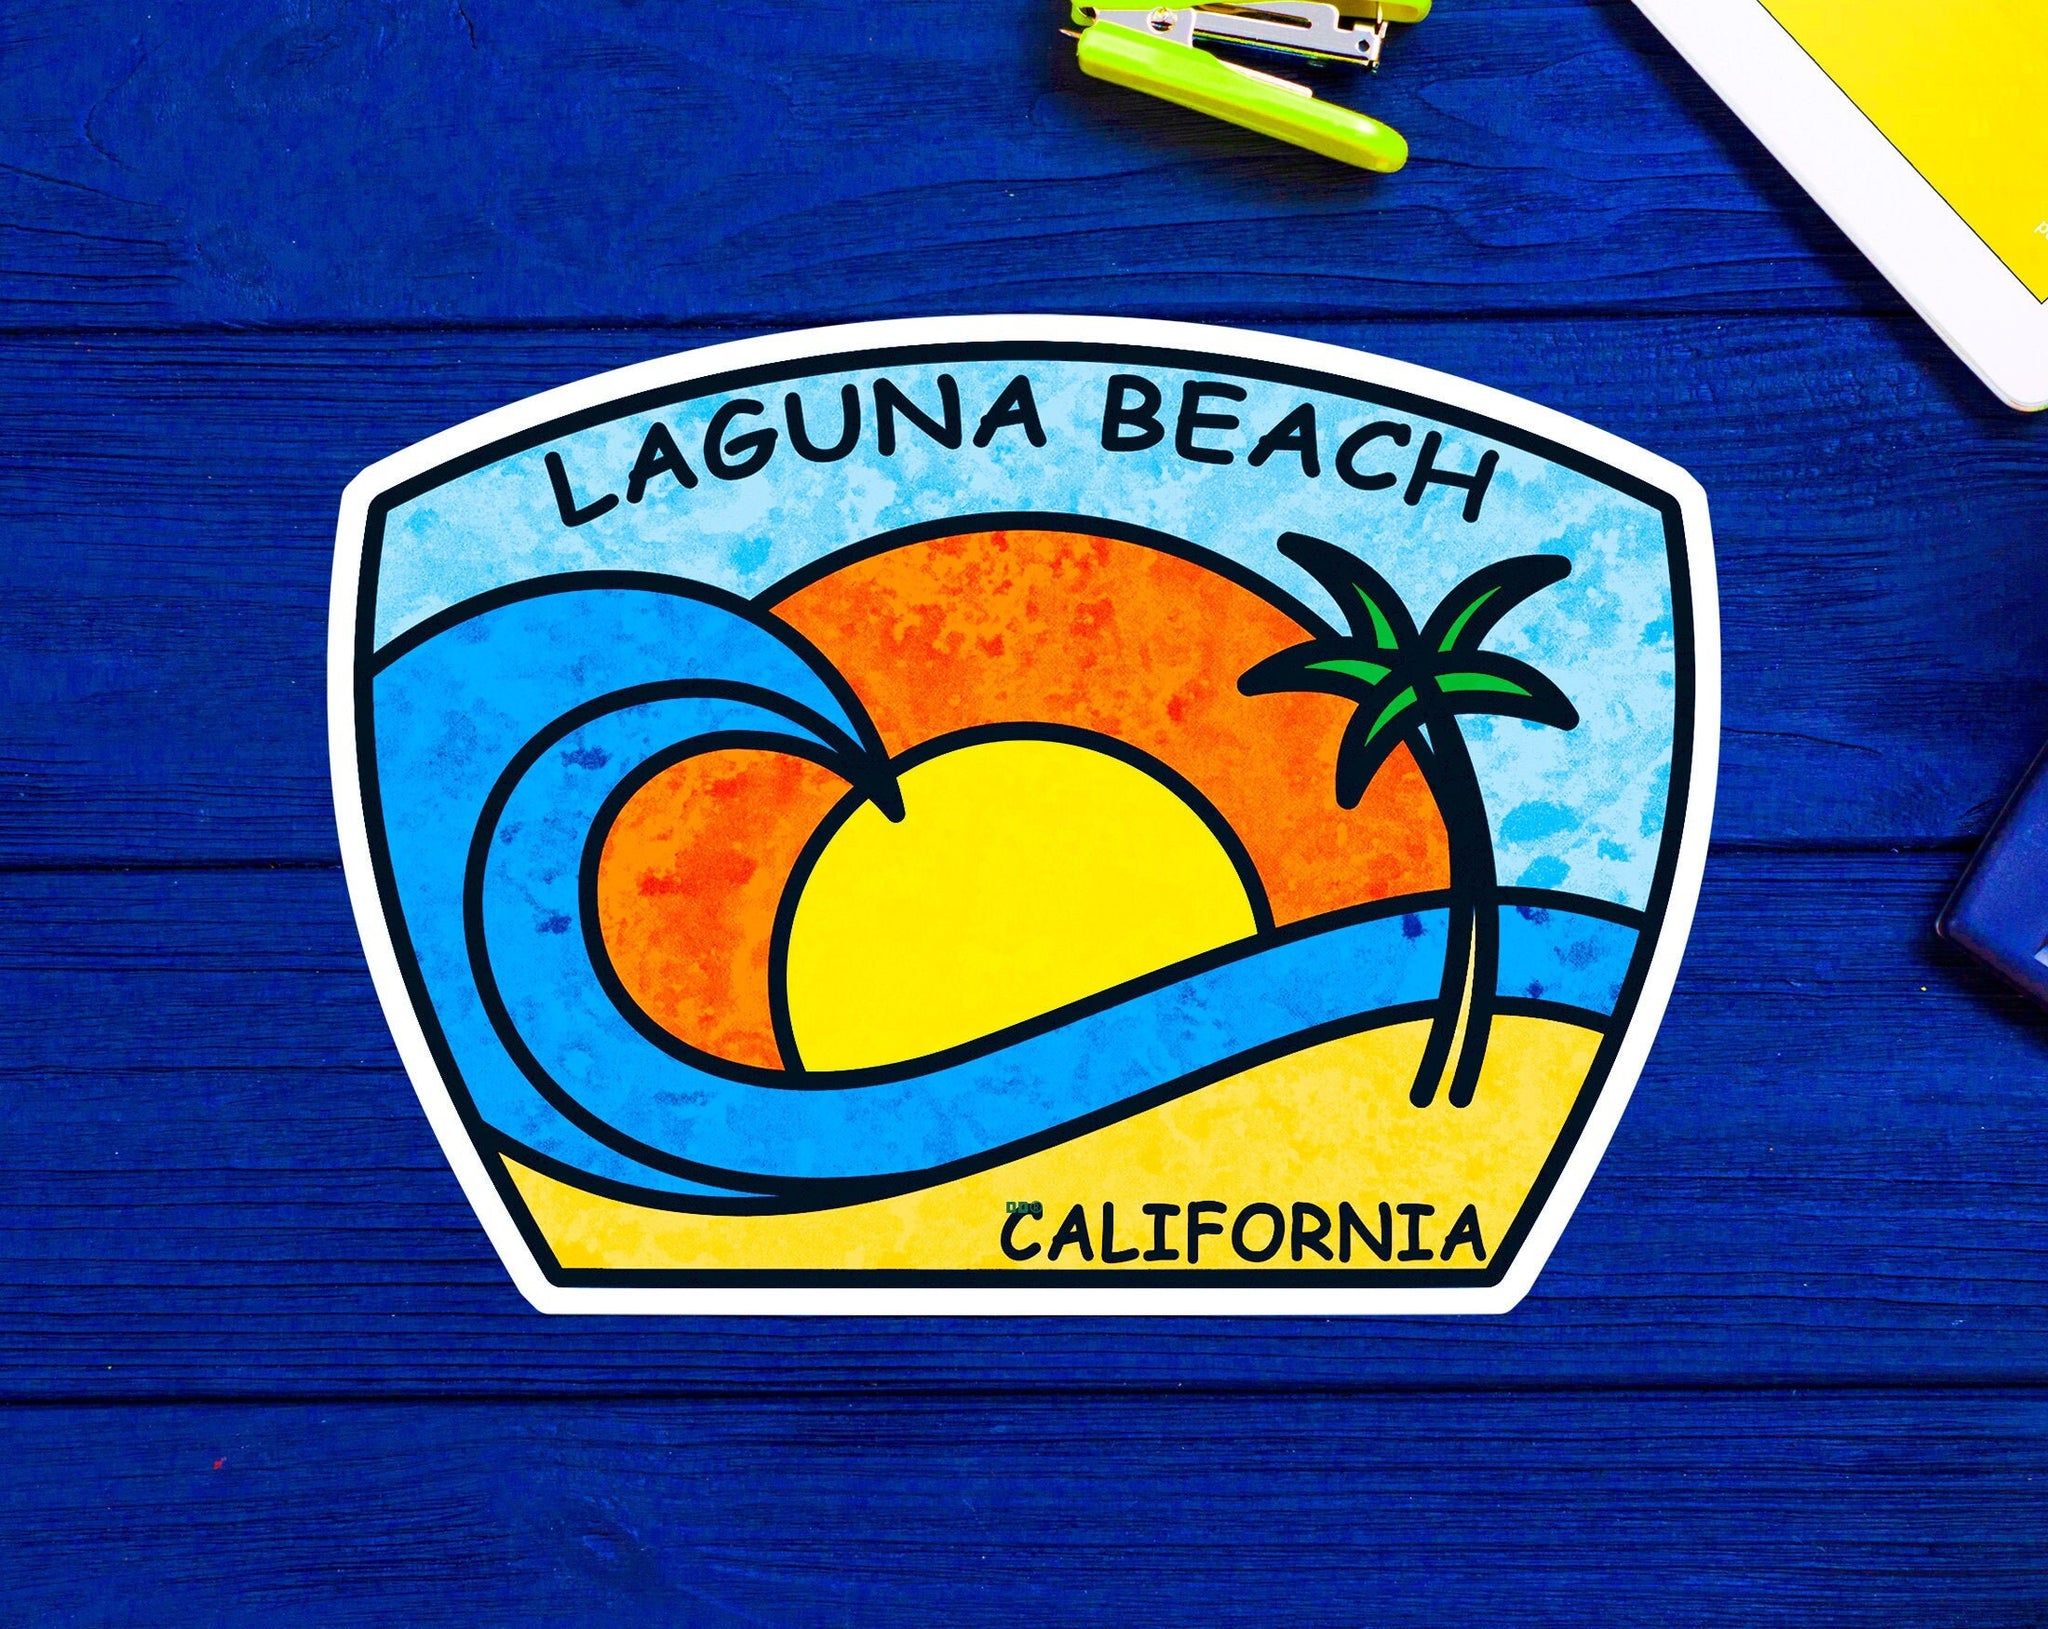 Laguna Beach California Decal Sticker 3.75" Los Angeles Pacific Ocean Surfing